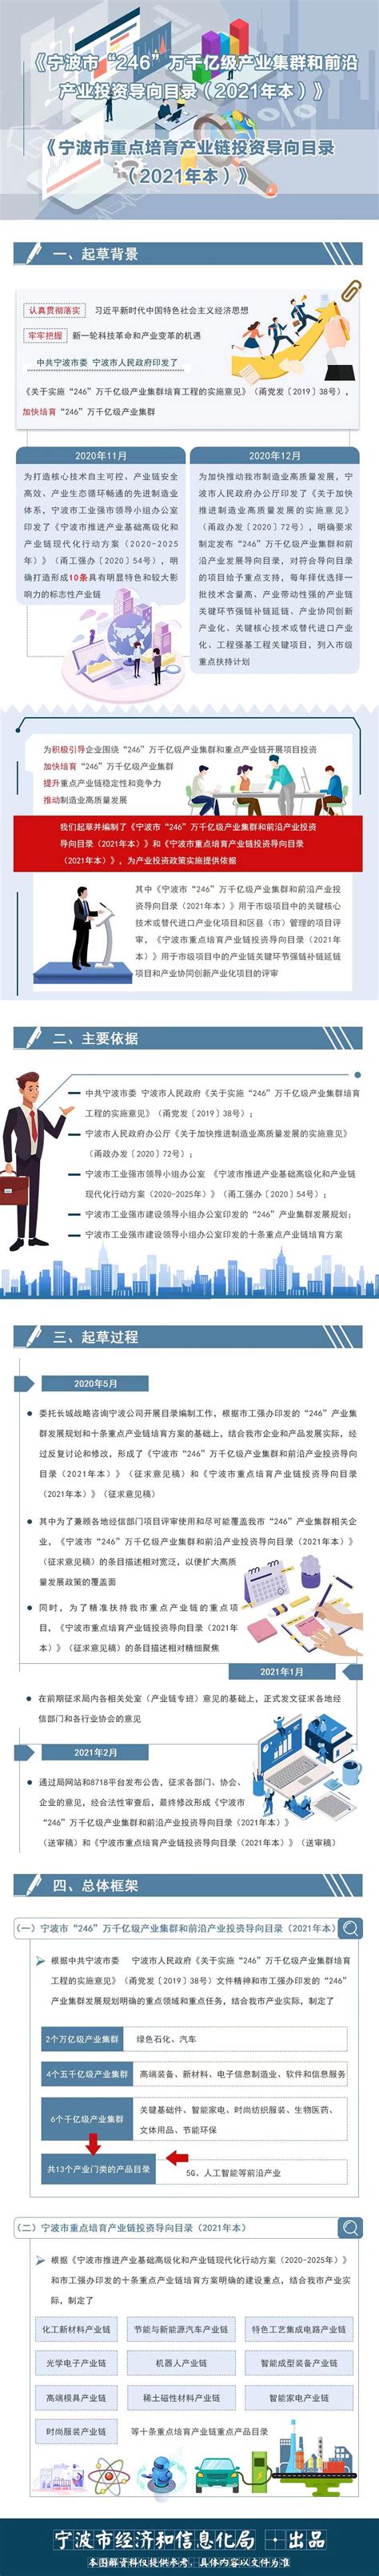 2018年7月宁波市房地产开发投资额、购置土地面积及商品住宅开发投资额统计分析_智研咨询